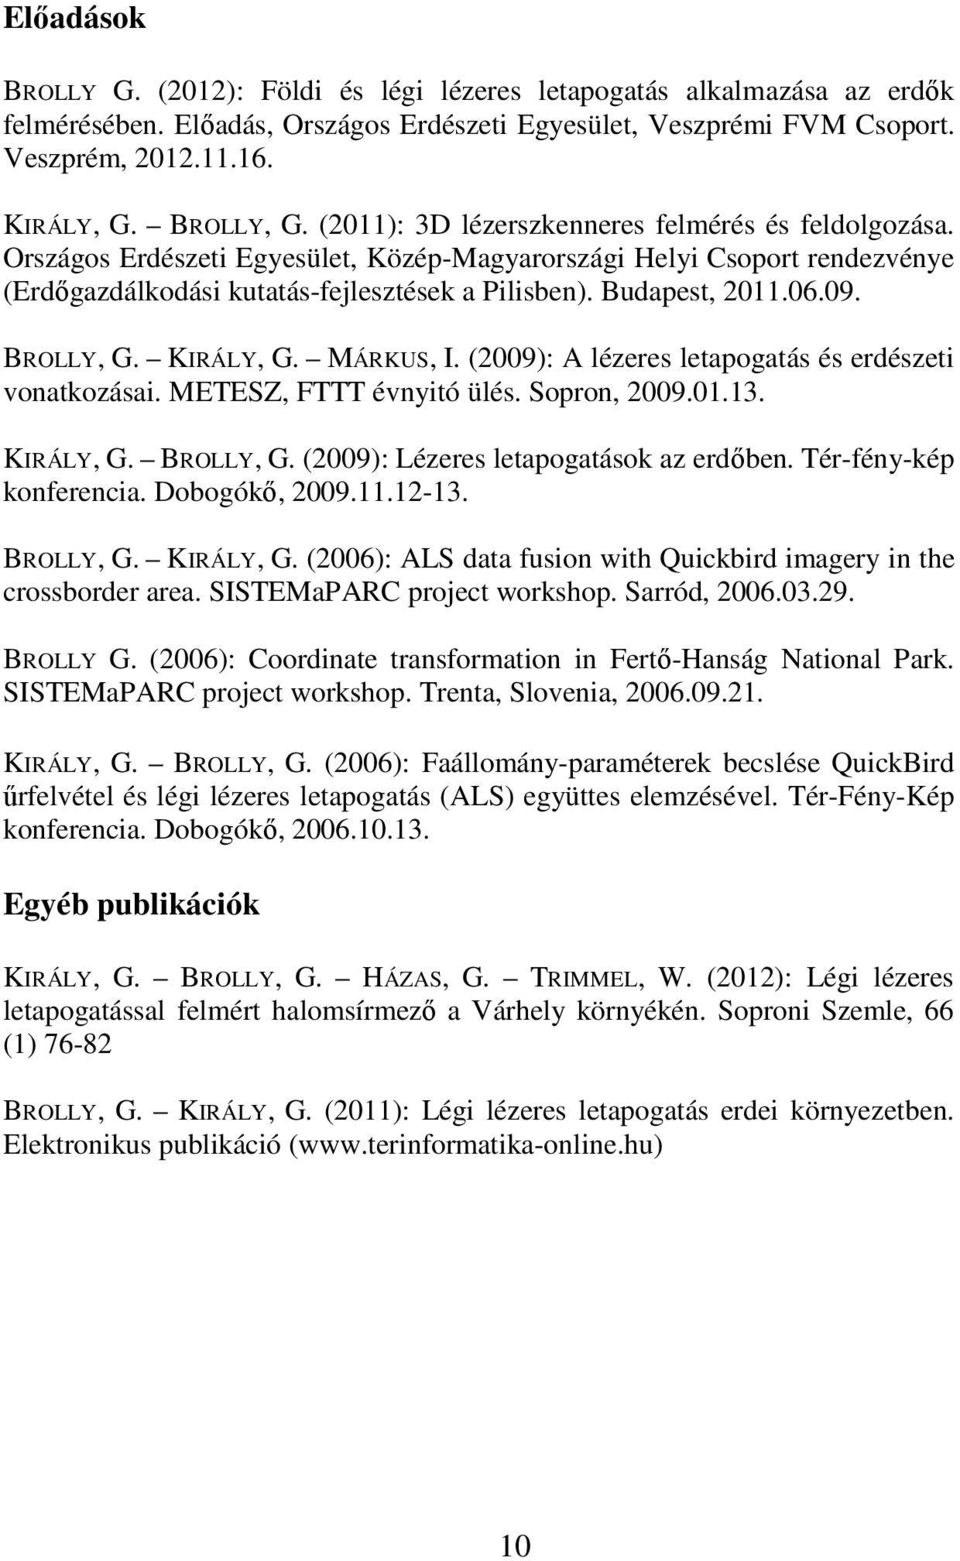 Budapest, 2011.06.09. BROLLY, G. KIRÁLY, G. MÁRKUS, I. (2009): A lézeres letapogatás és erdészeti vonatkozásai. METESZ, FTTT évnyitó ülés. Sopron, 2009.01.13. KIRÁLY, G. BROLLY, G. (2009): Lézeres letapogatások az erdőben.